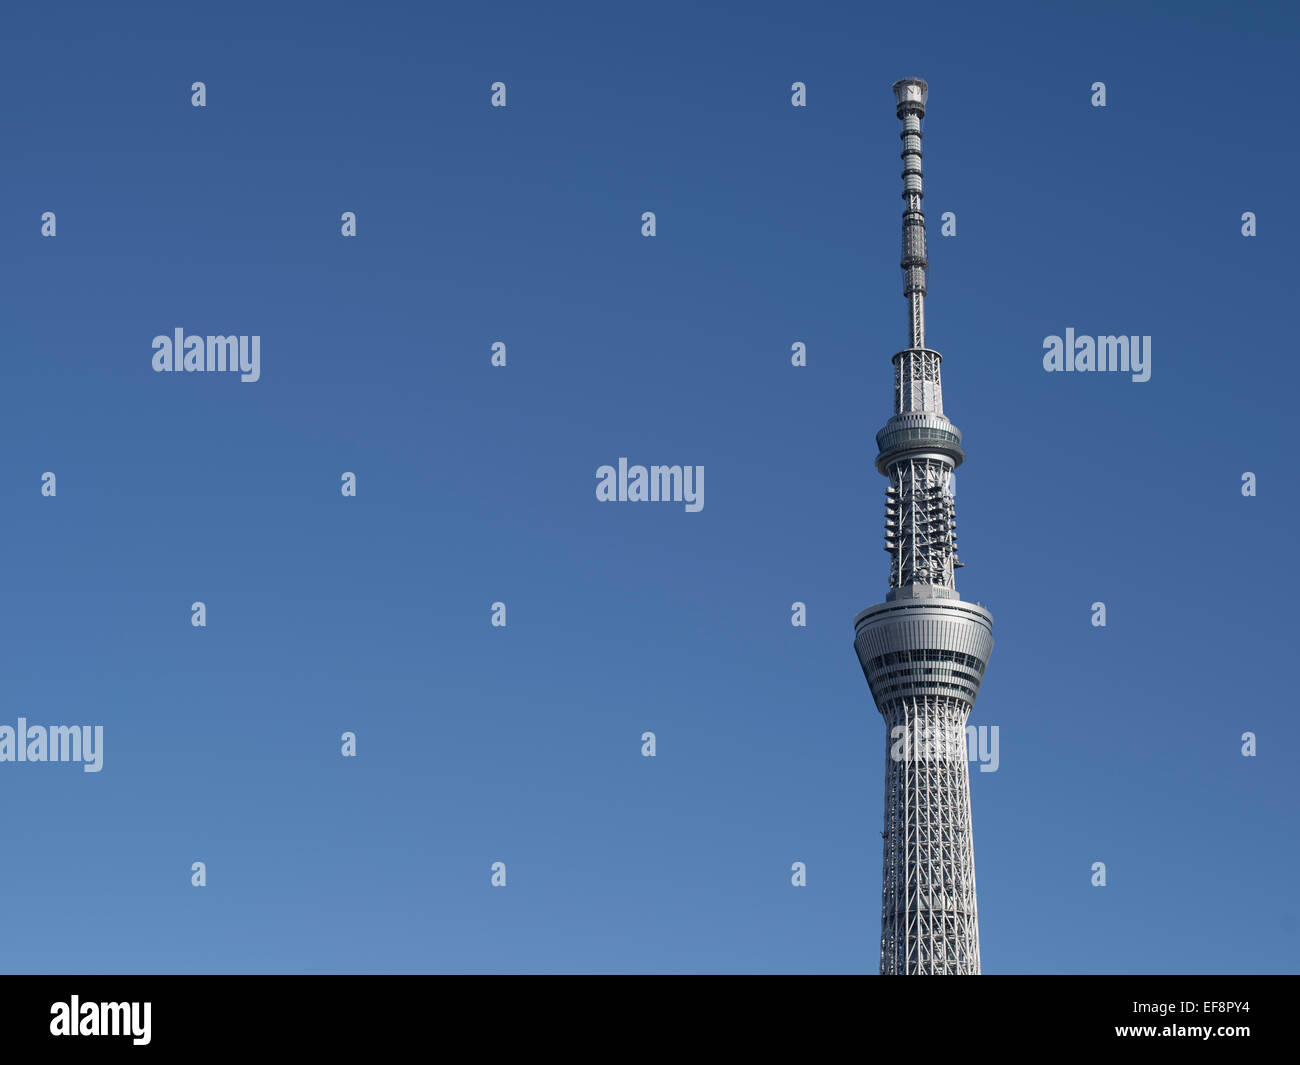 , Tokyo Skytree à 634m le plus haut du monde de free-standing tour de radiodiffusion. Banque D'Images